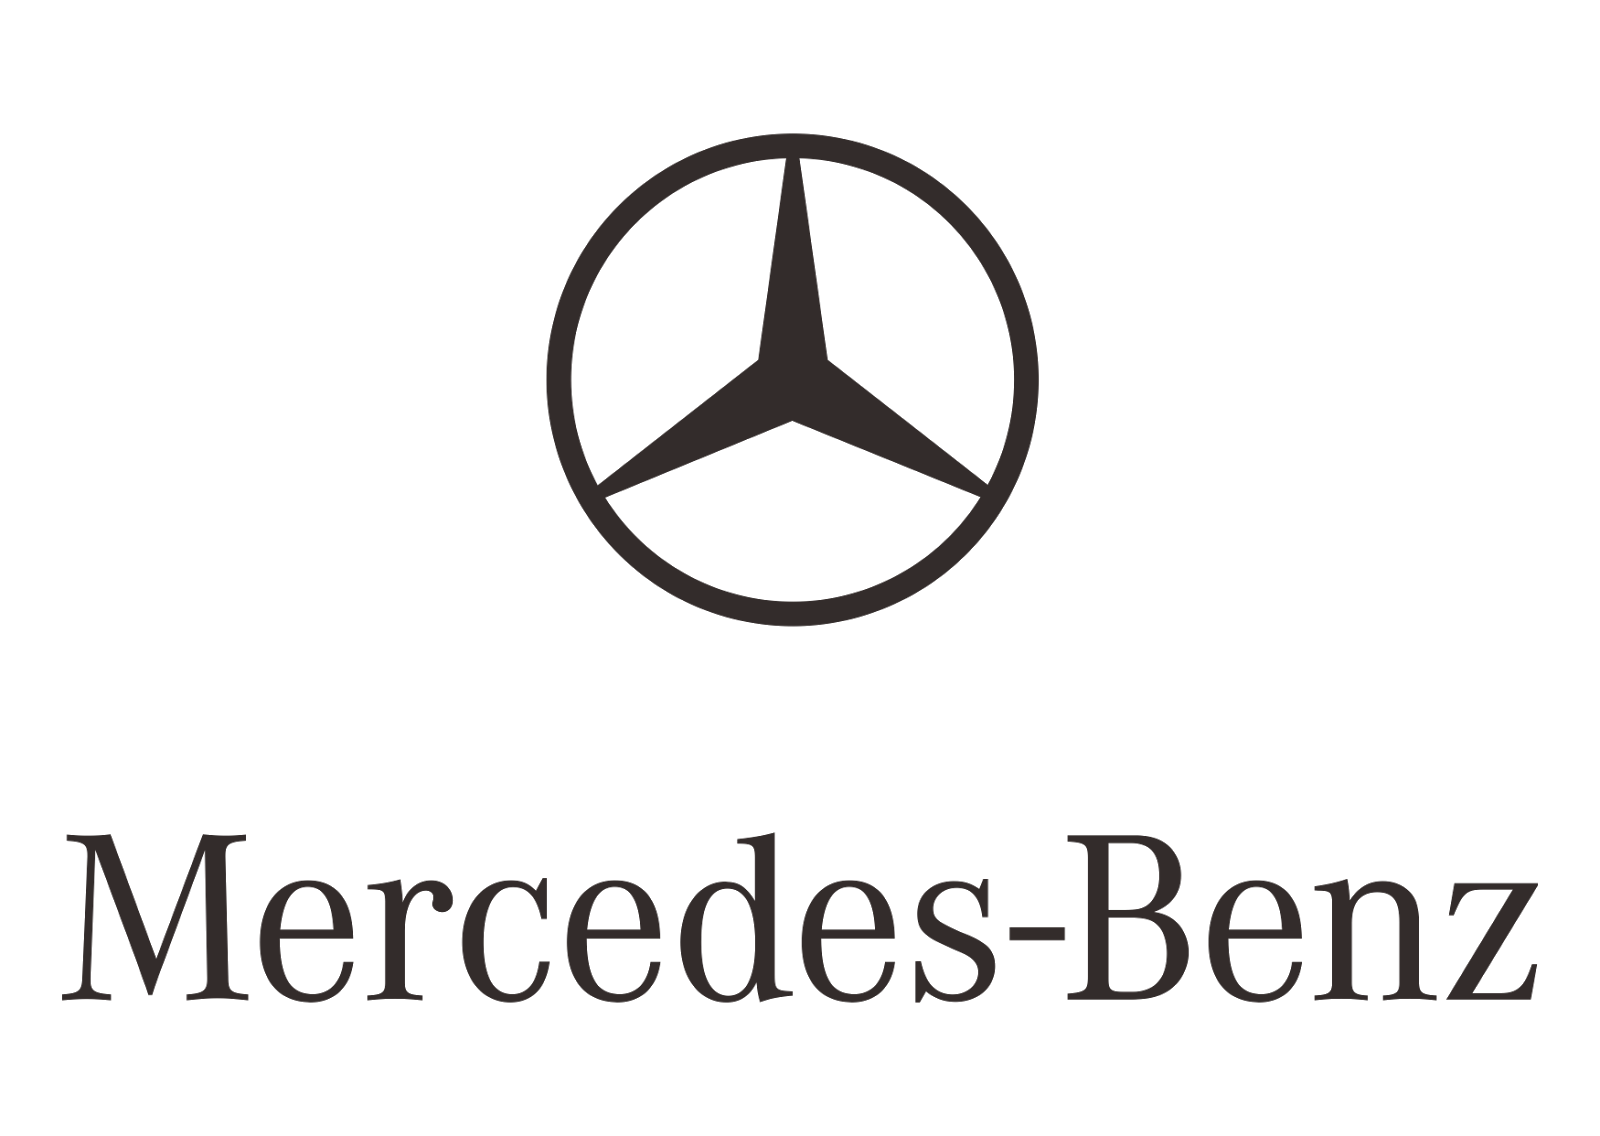 https://freepngimg.com/save/24205-mercedes-benz-logo-transparent-image/1600x1136